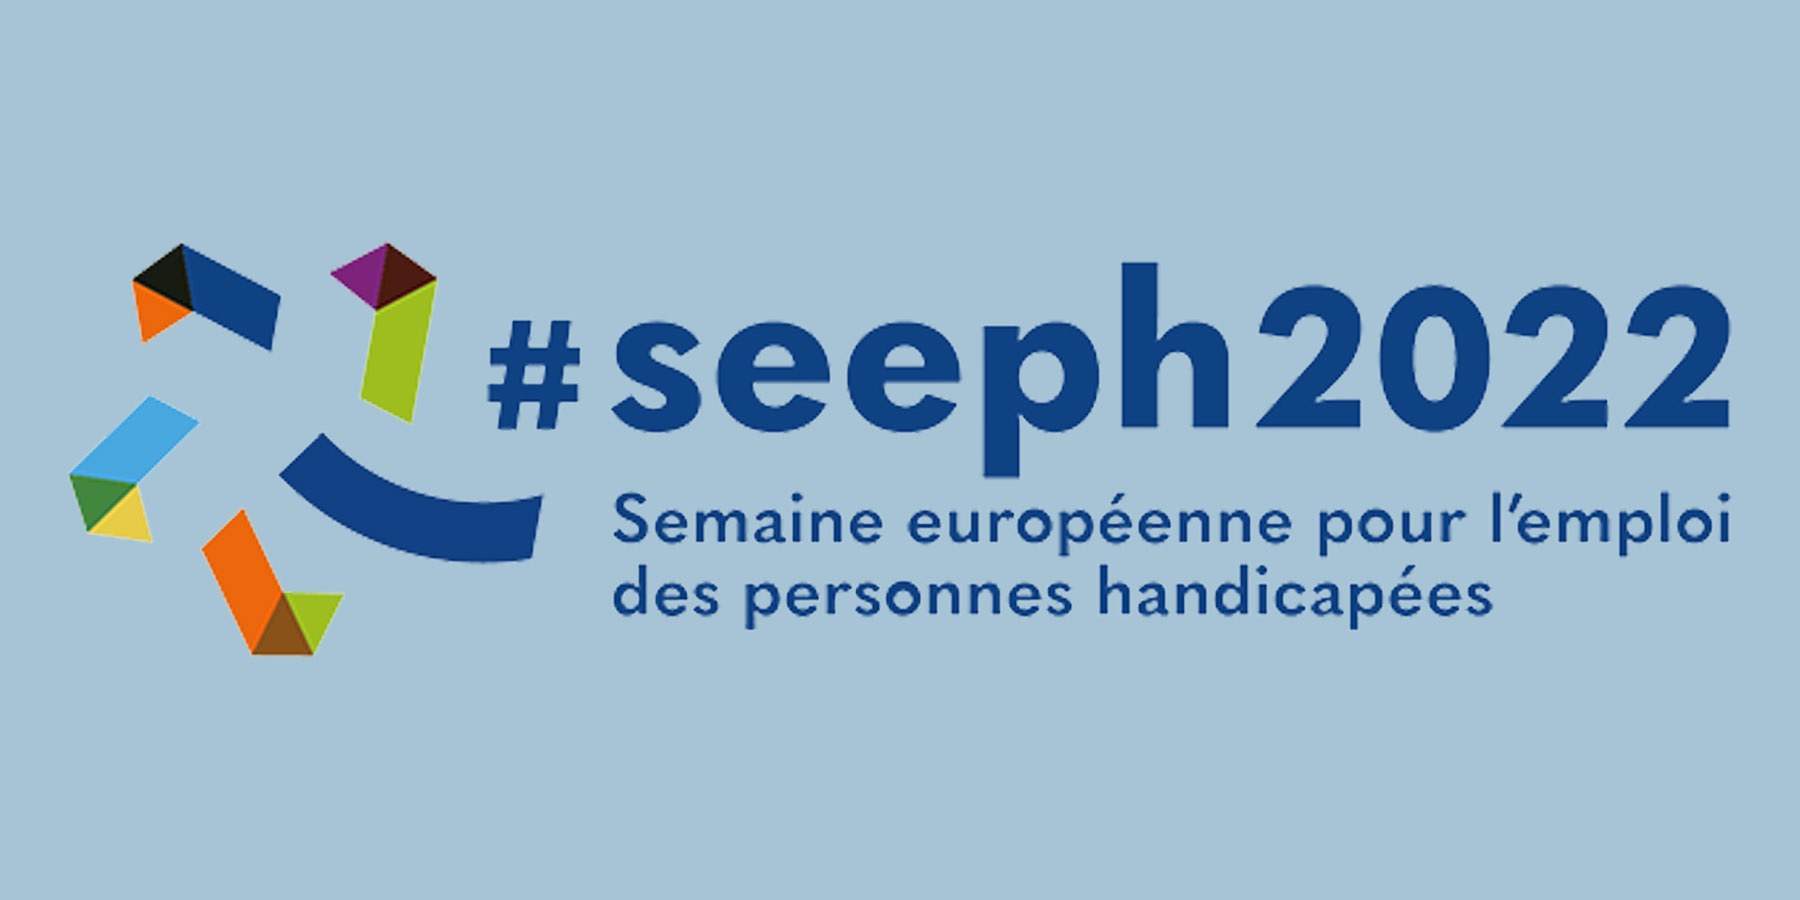 Le 5 novembre, les Cafés de l'Emploi s'associe à la #SEEPH2022